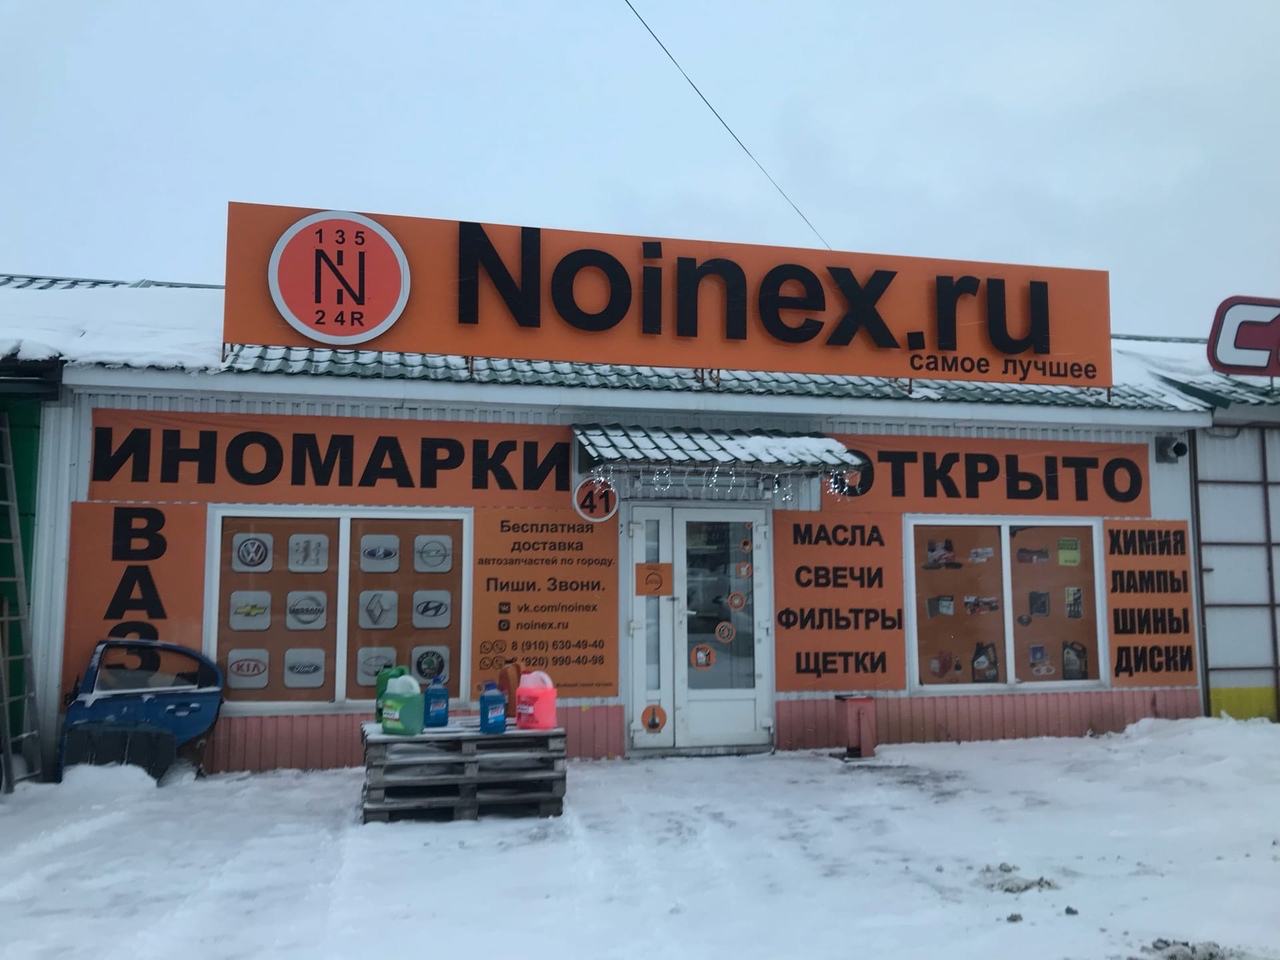 Режим работы магазинов Noinex в новогодние праздники.